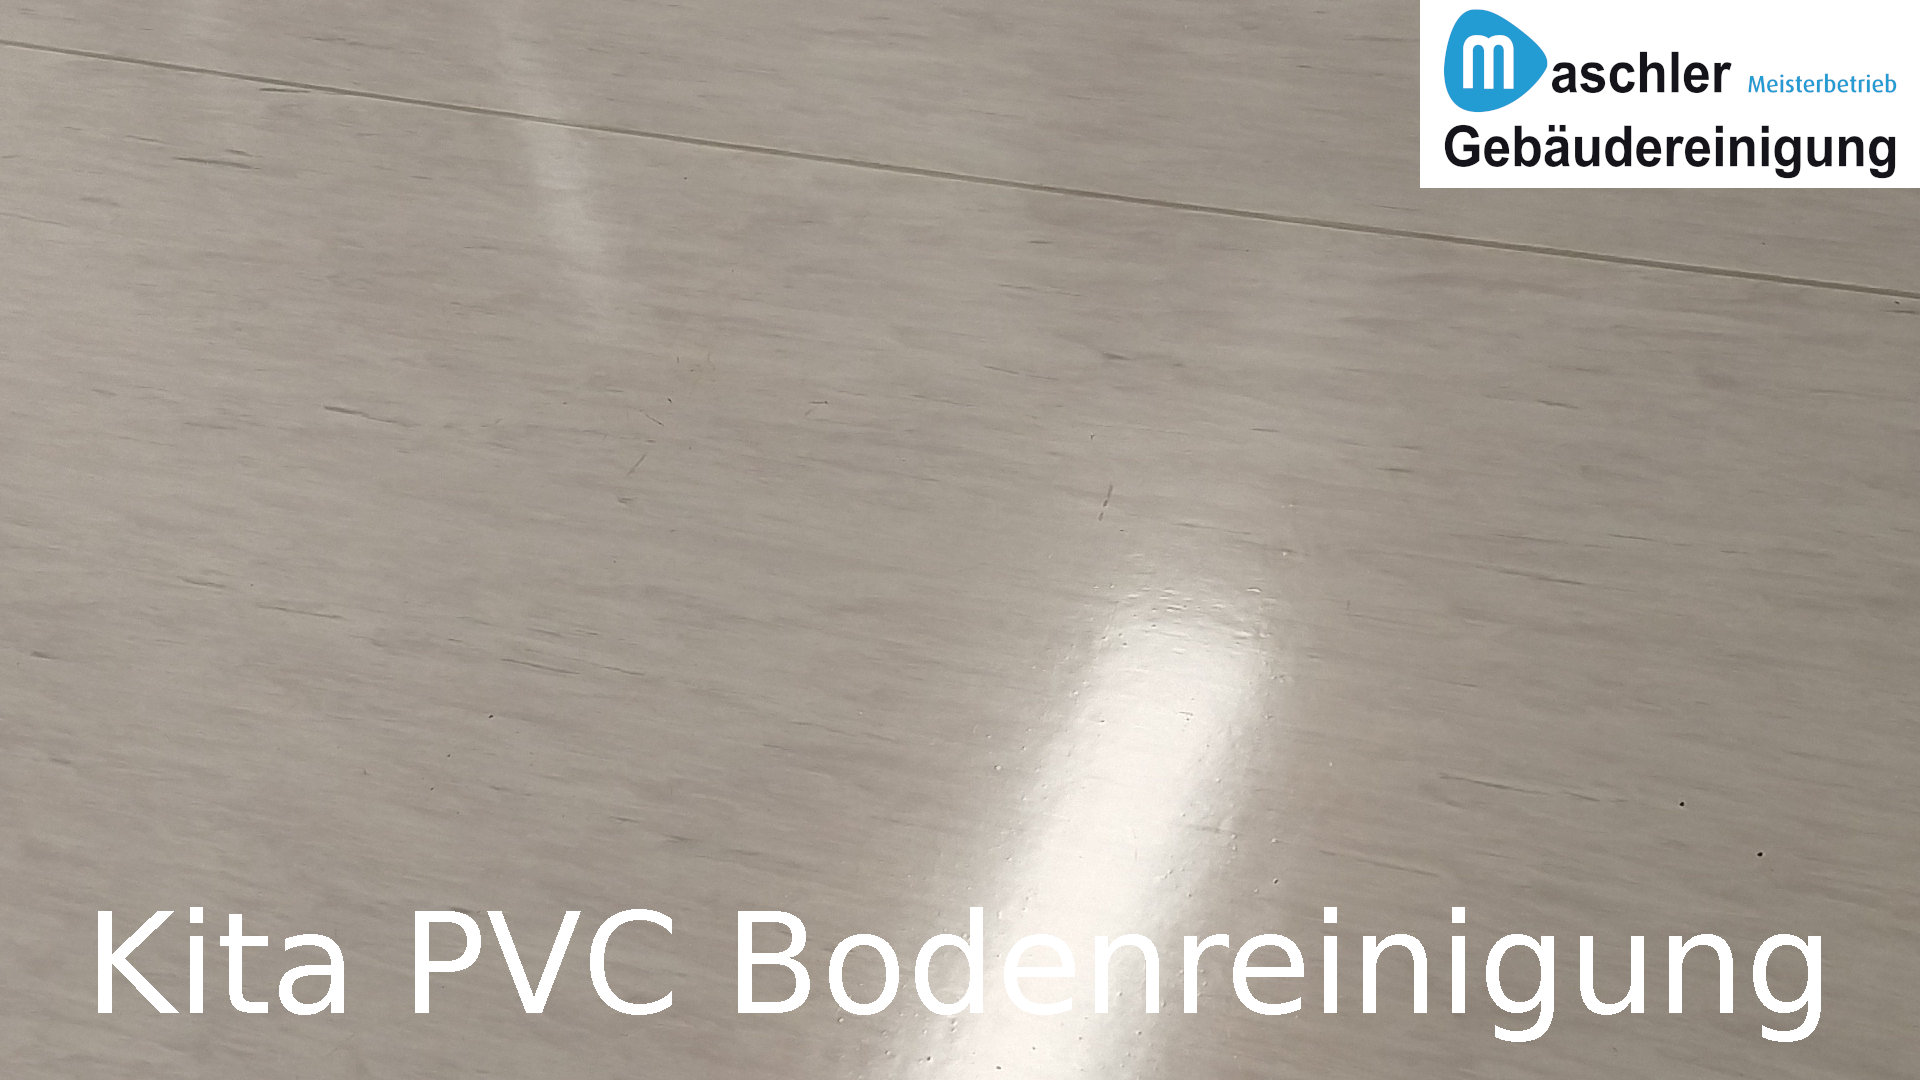 Kindergarten PVC Bodenreinigung - Gebäudereinigung Maschler Schwerin